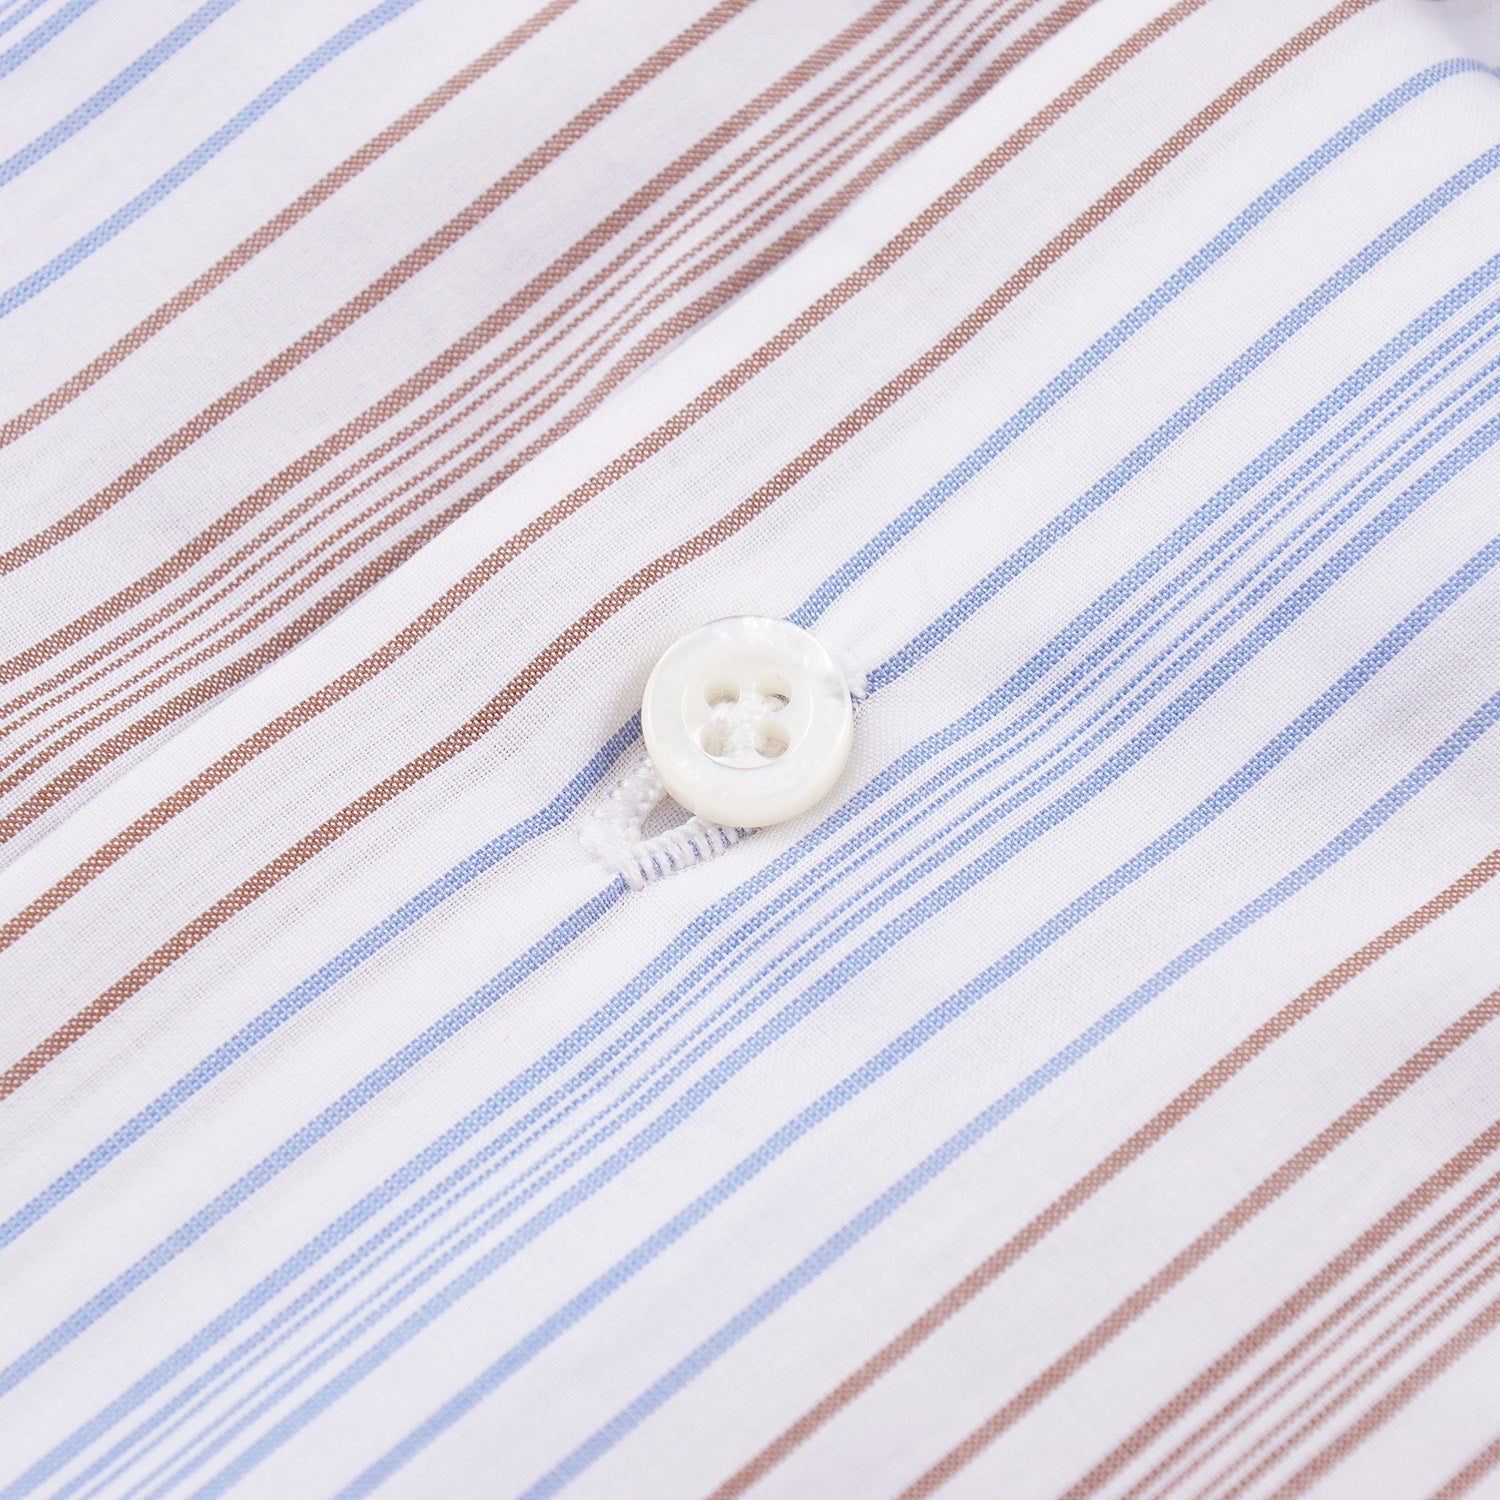 Isaia Modern 'Mix Fit' Cotton Dress Shirt - Top Shelf Apparel